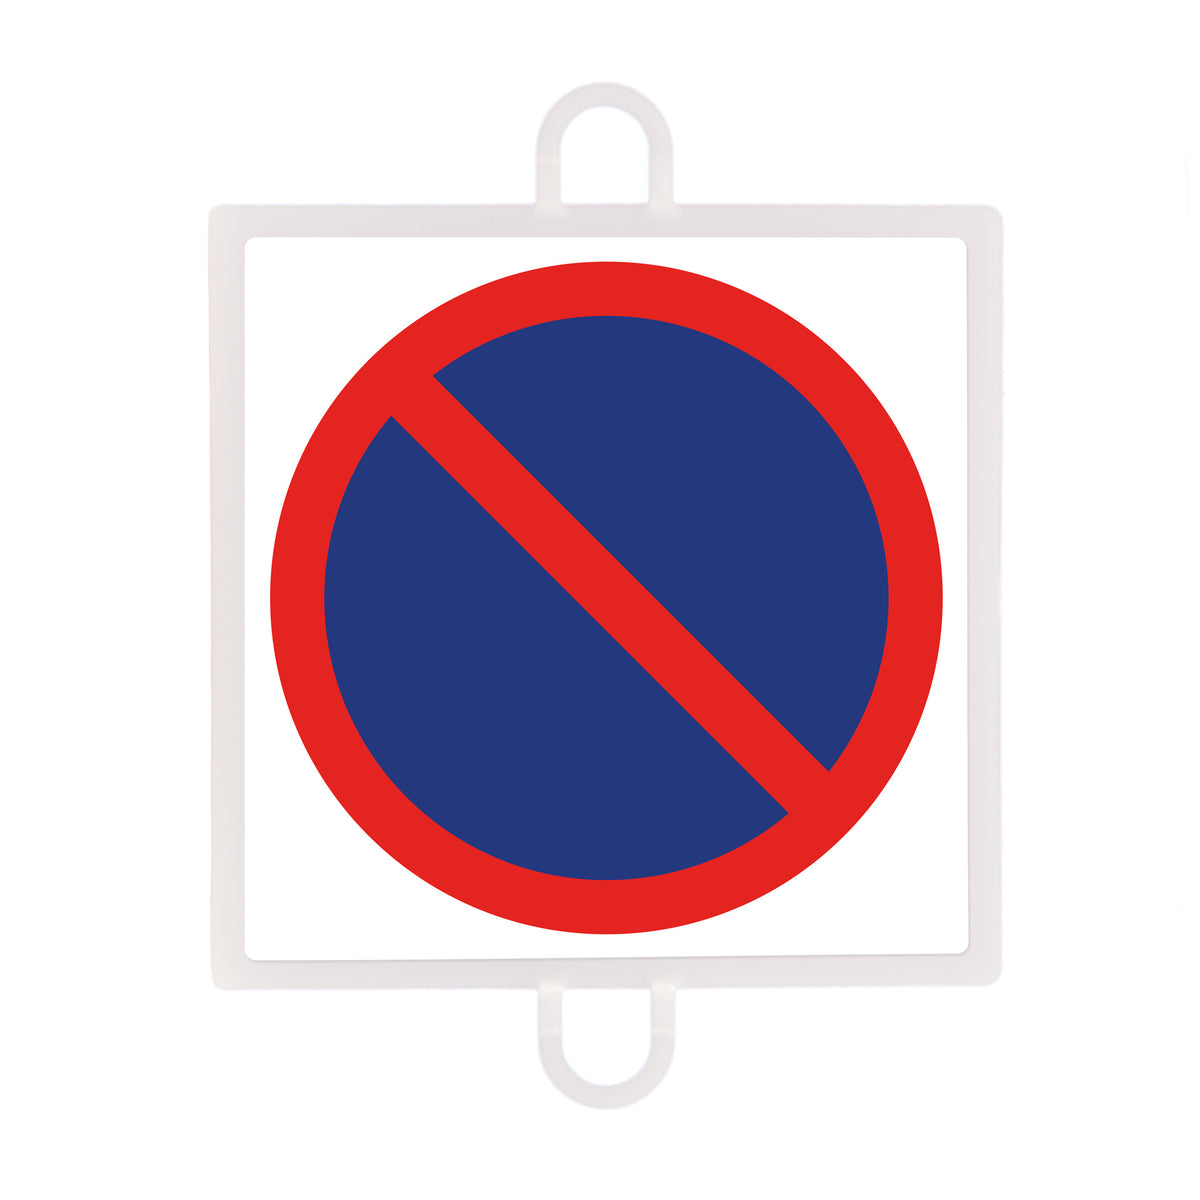 Panel De Señalización Tráfico De Prohibición Nº 3 (Prohibido Estacionar)